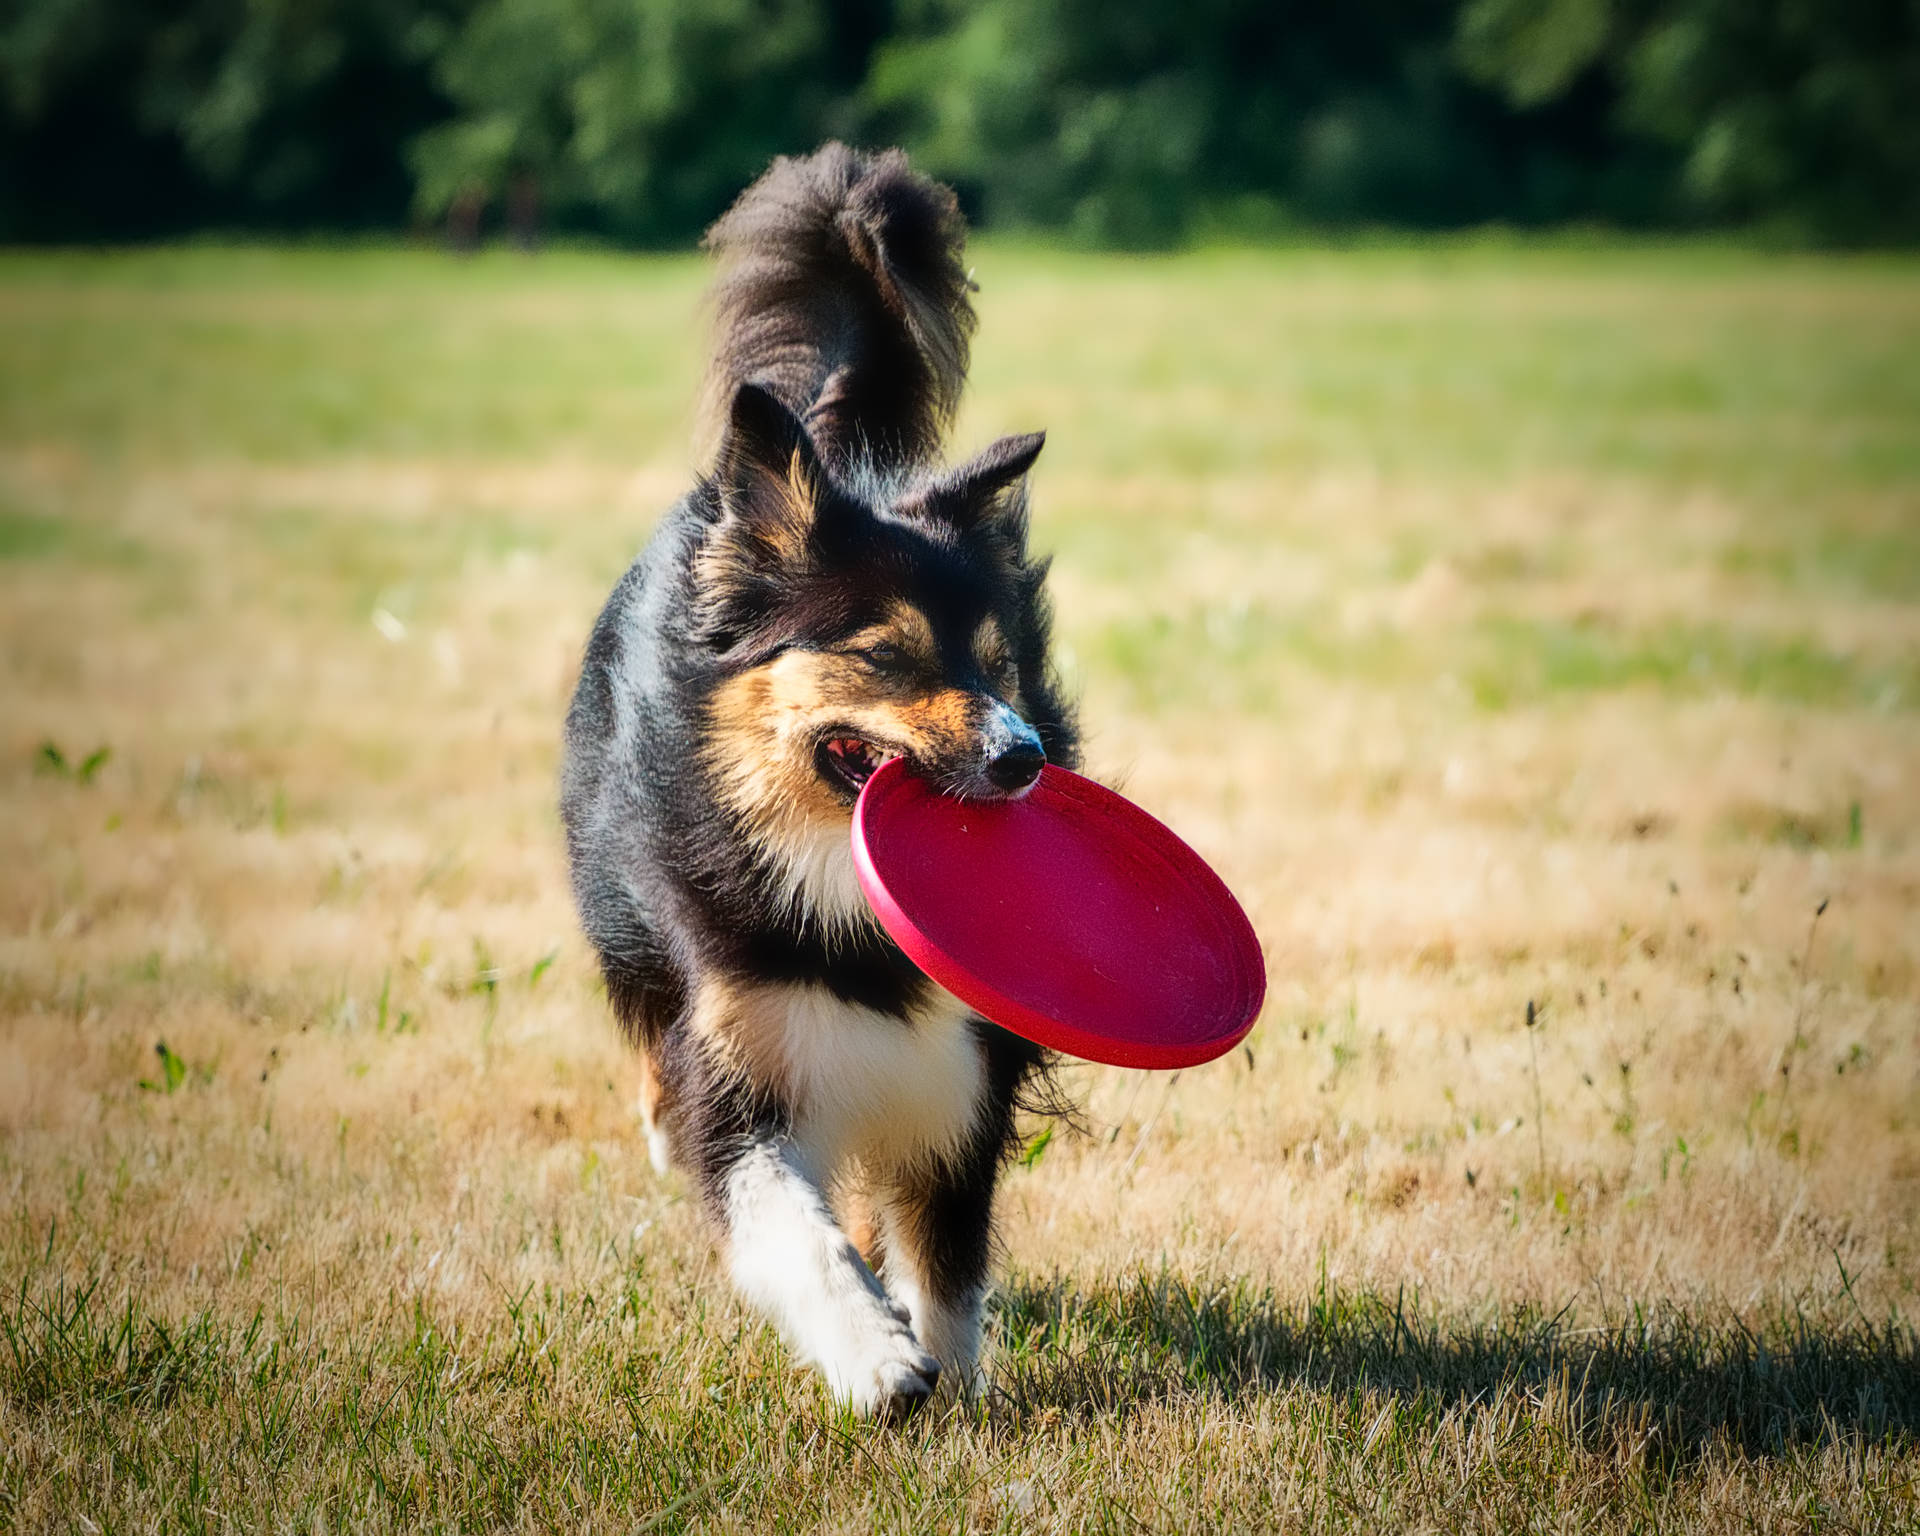 Long Coat Dog With Frisbee